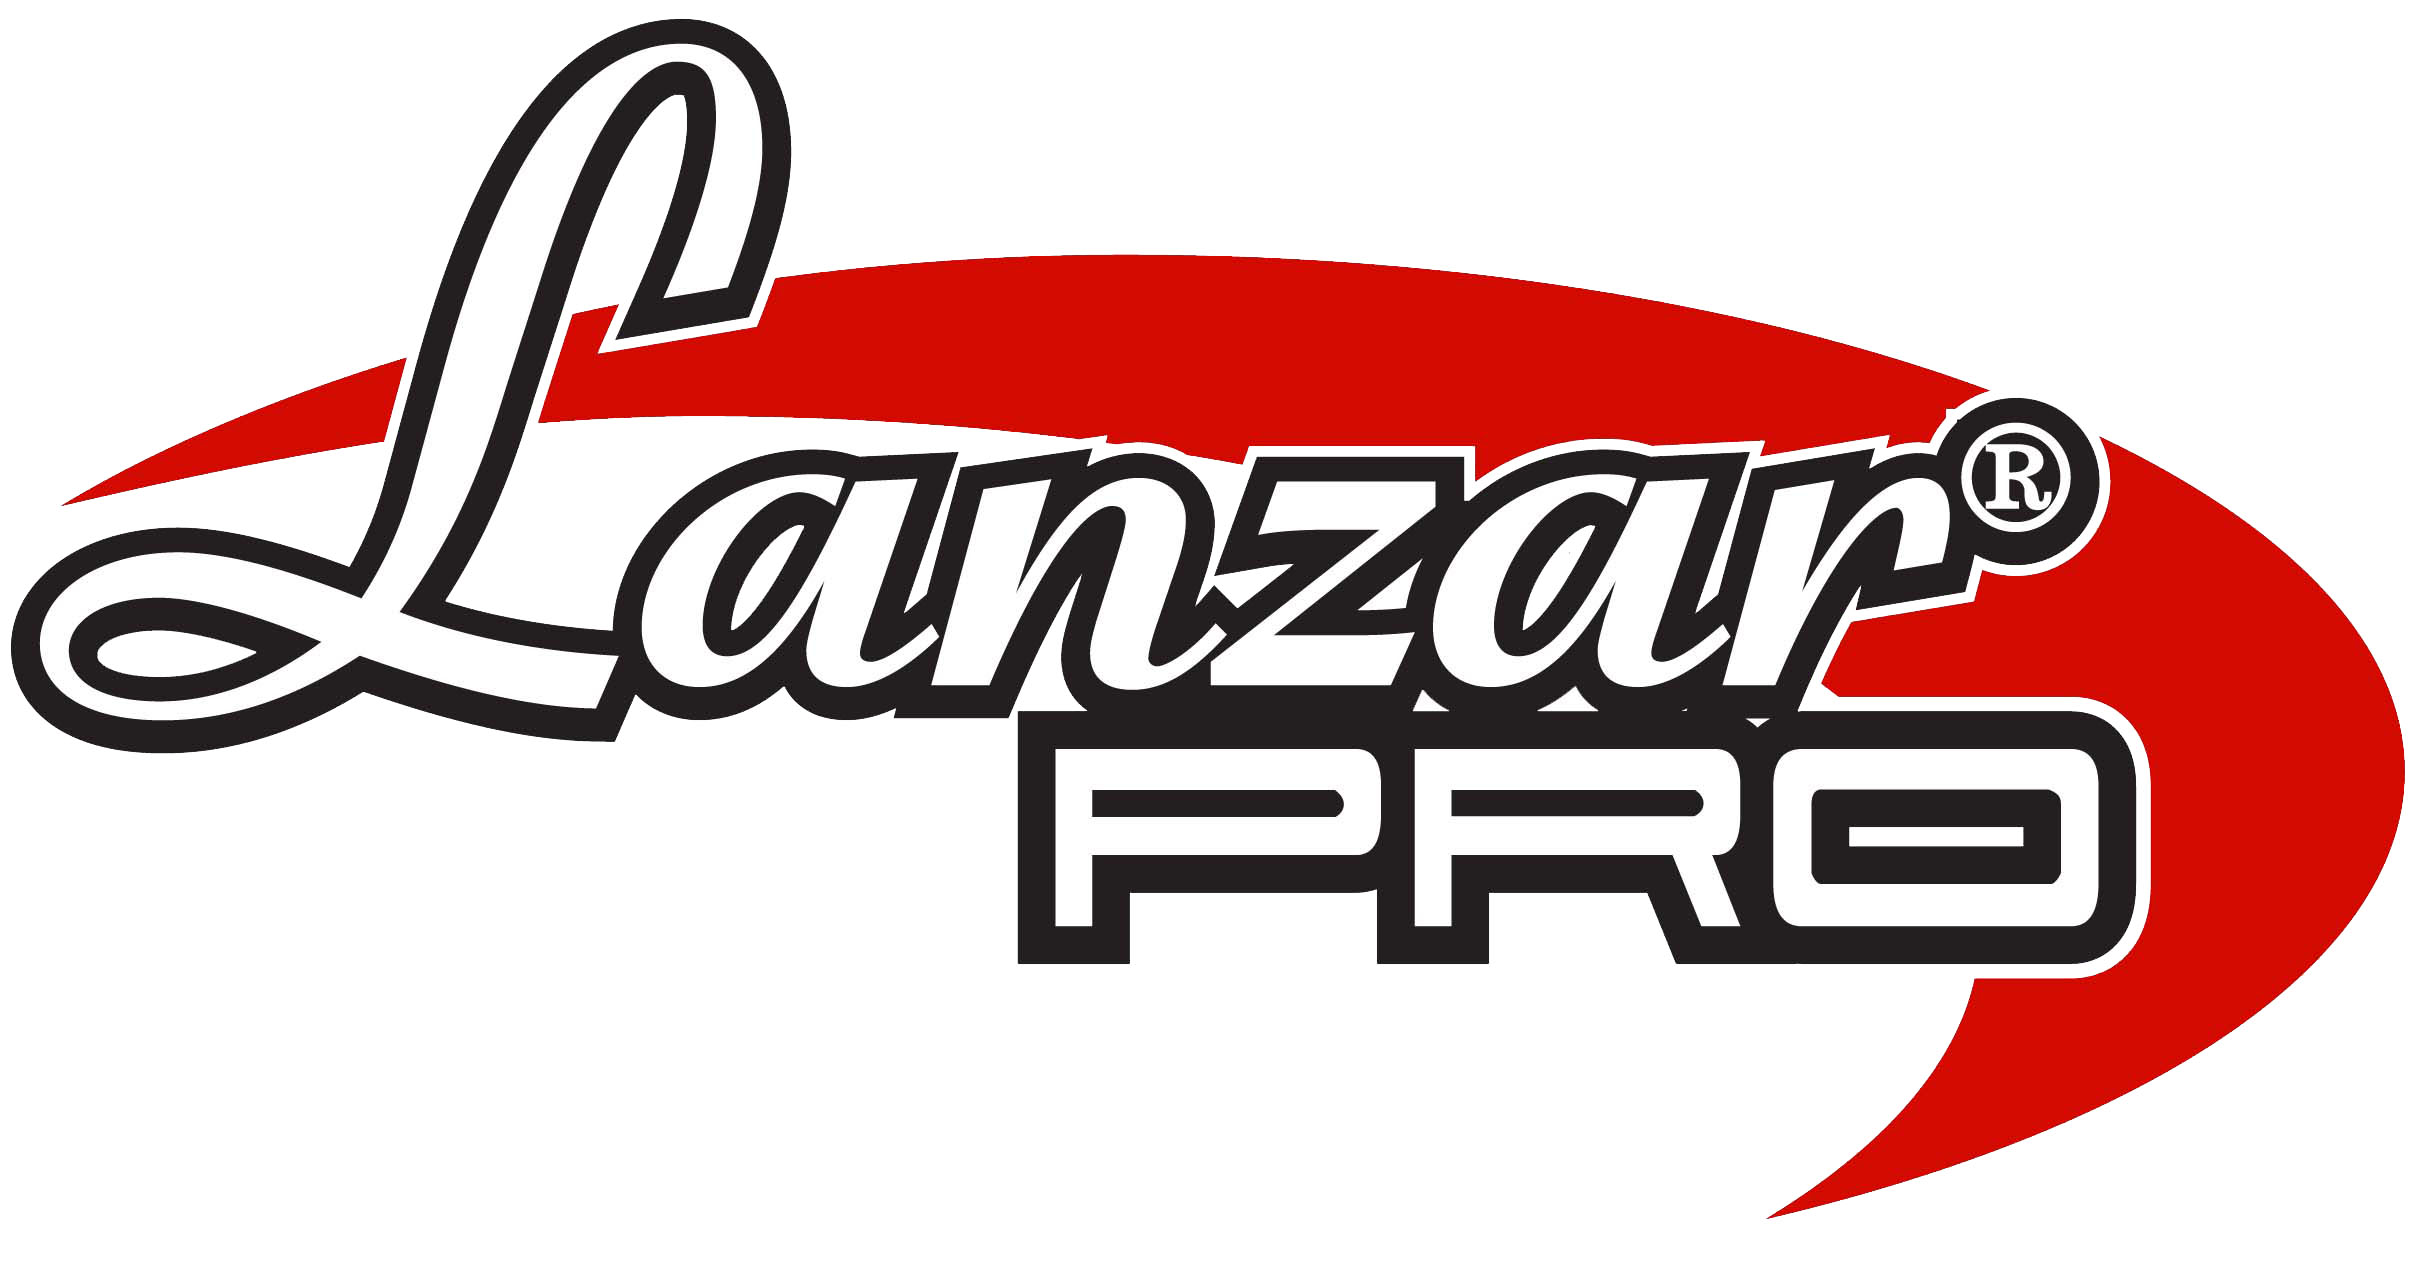 Lanzar Pro Logo photo - 1